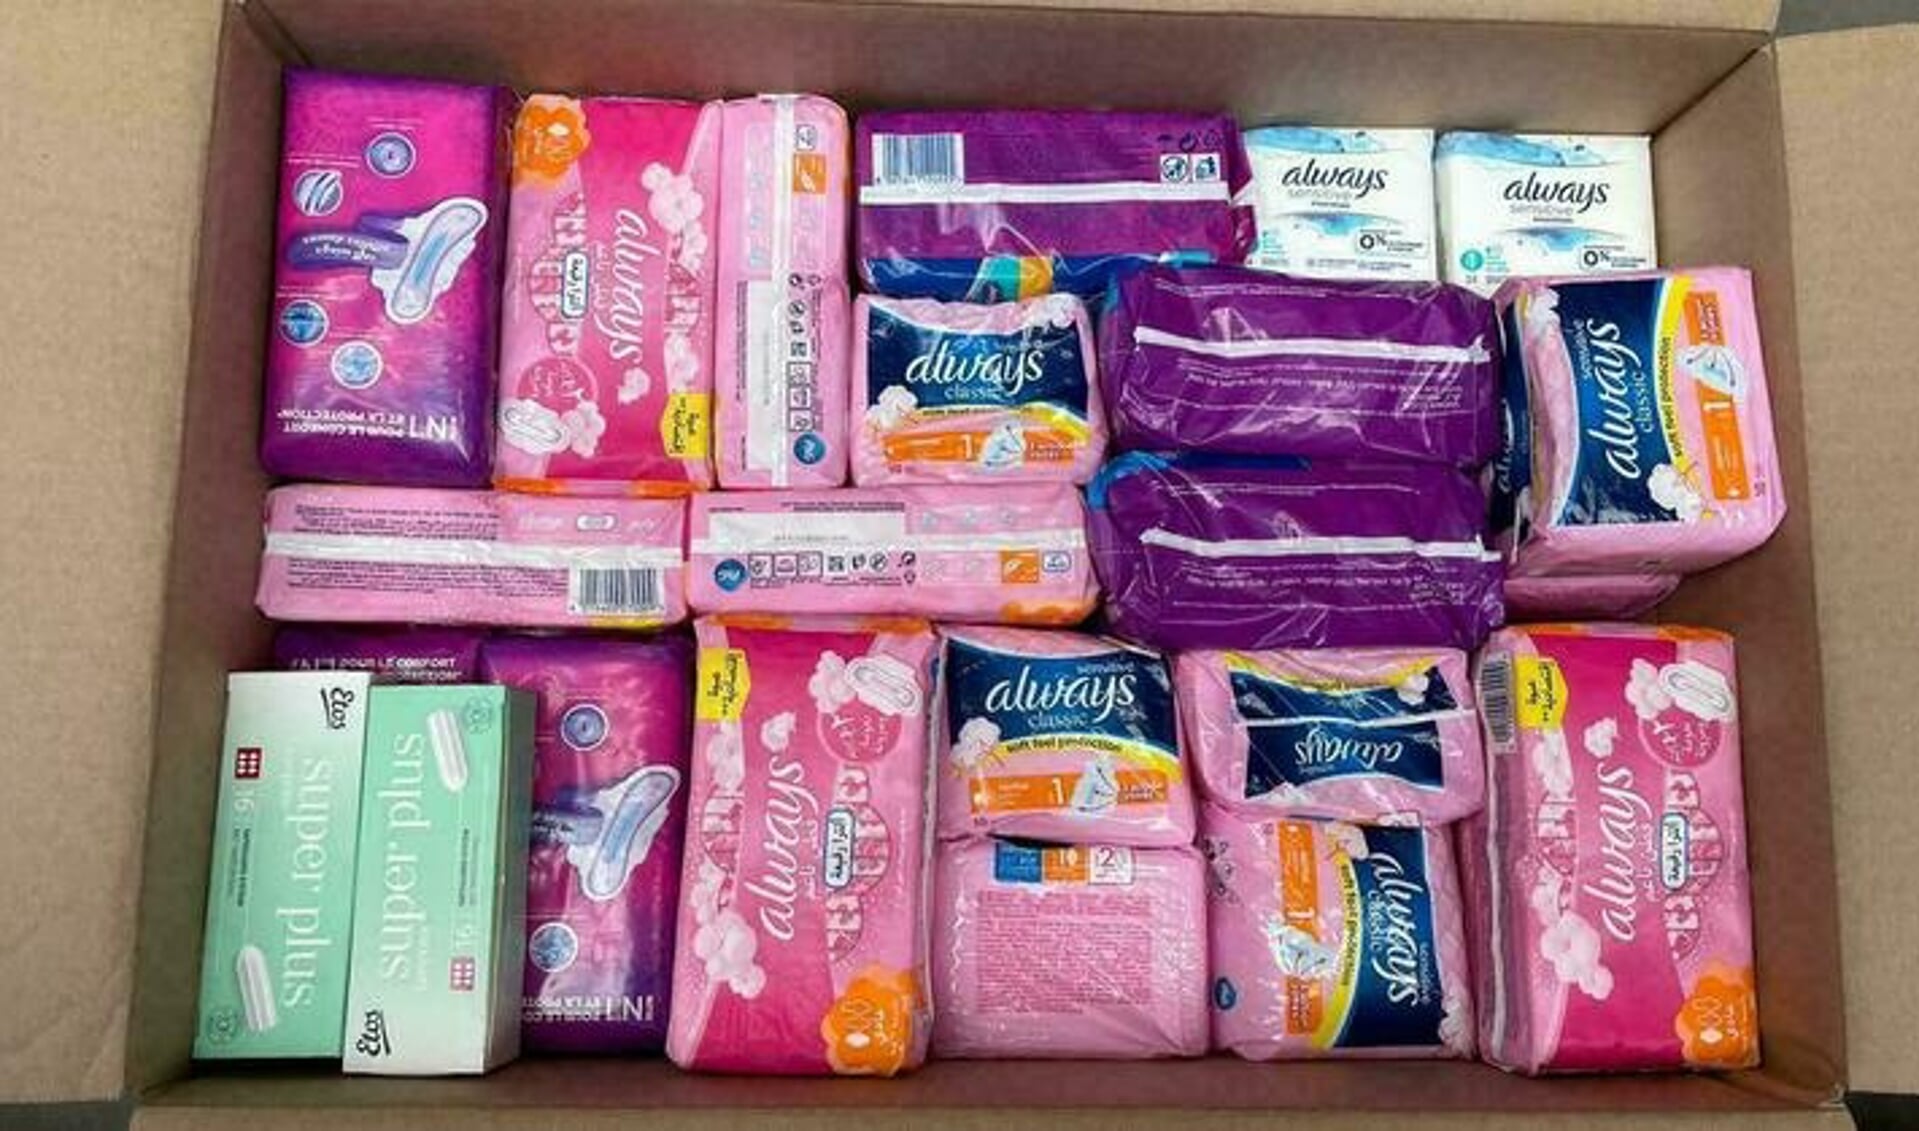 Gratis menstruatieproducten voor de meisjes en vrouwen die deze (soms) niet kunnen betalen.